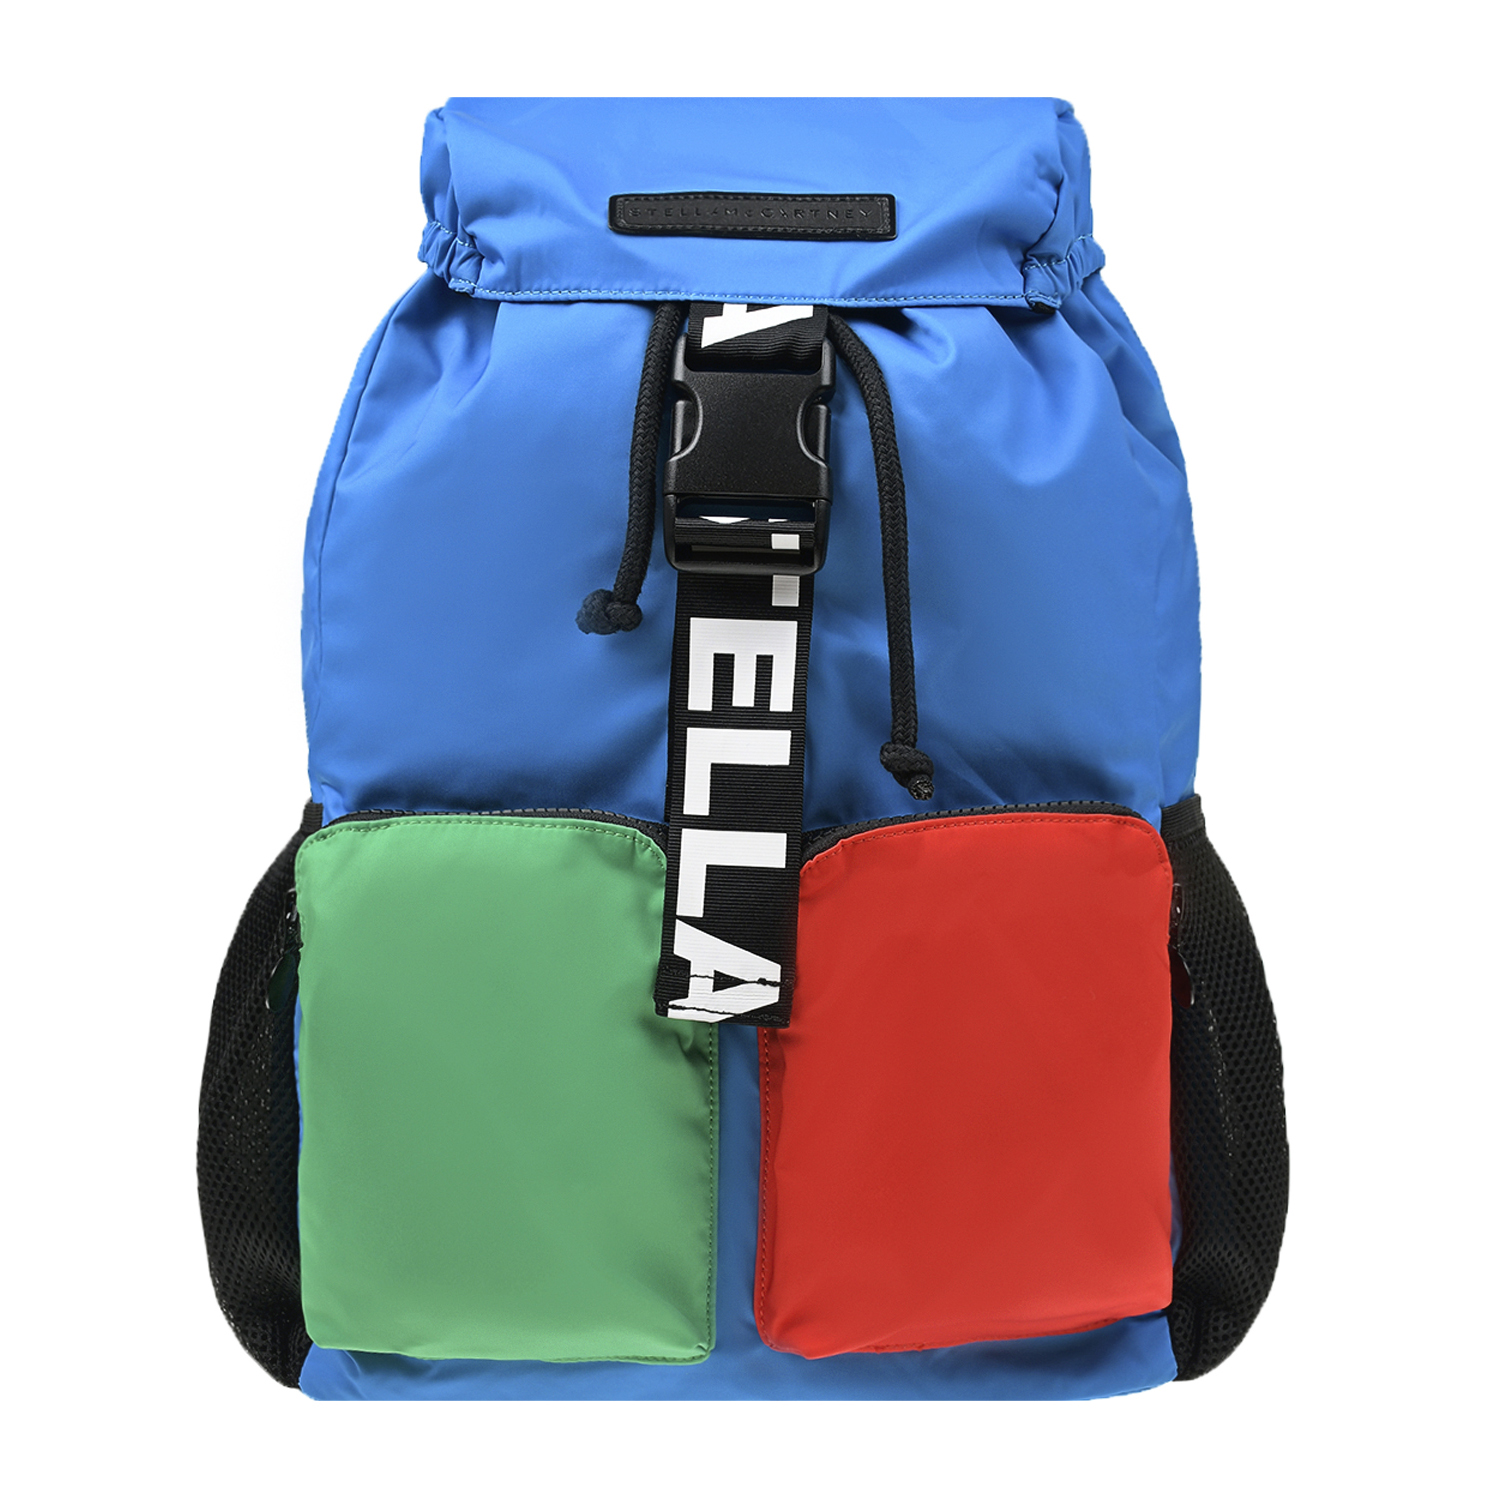 Рюкзак в стиле color block, 42x25x10 см Stella McCartney детский, размер unica, цвет мультиколор - фото 1